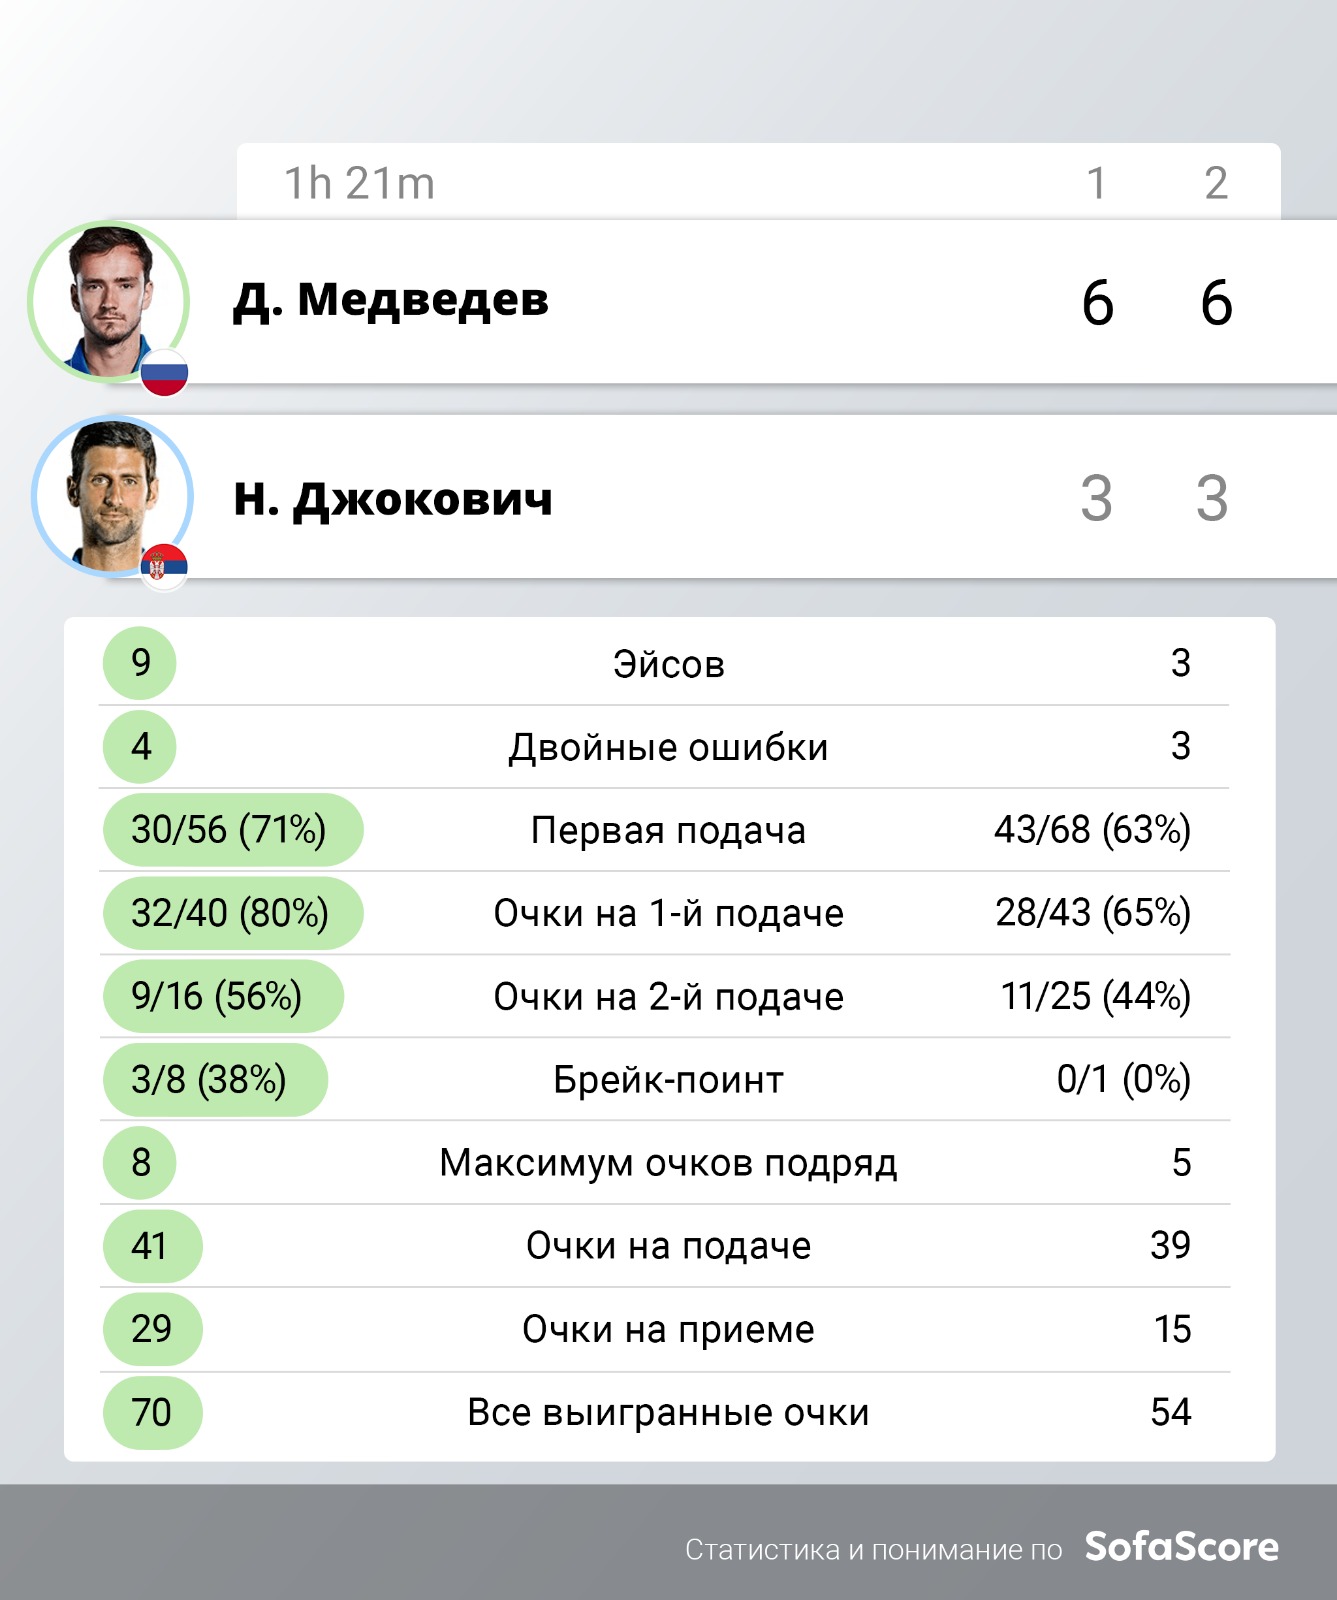 Теннисист Медведев впервые вышел в полуфинал итогового турнира ATP